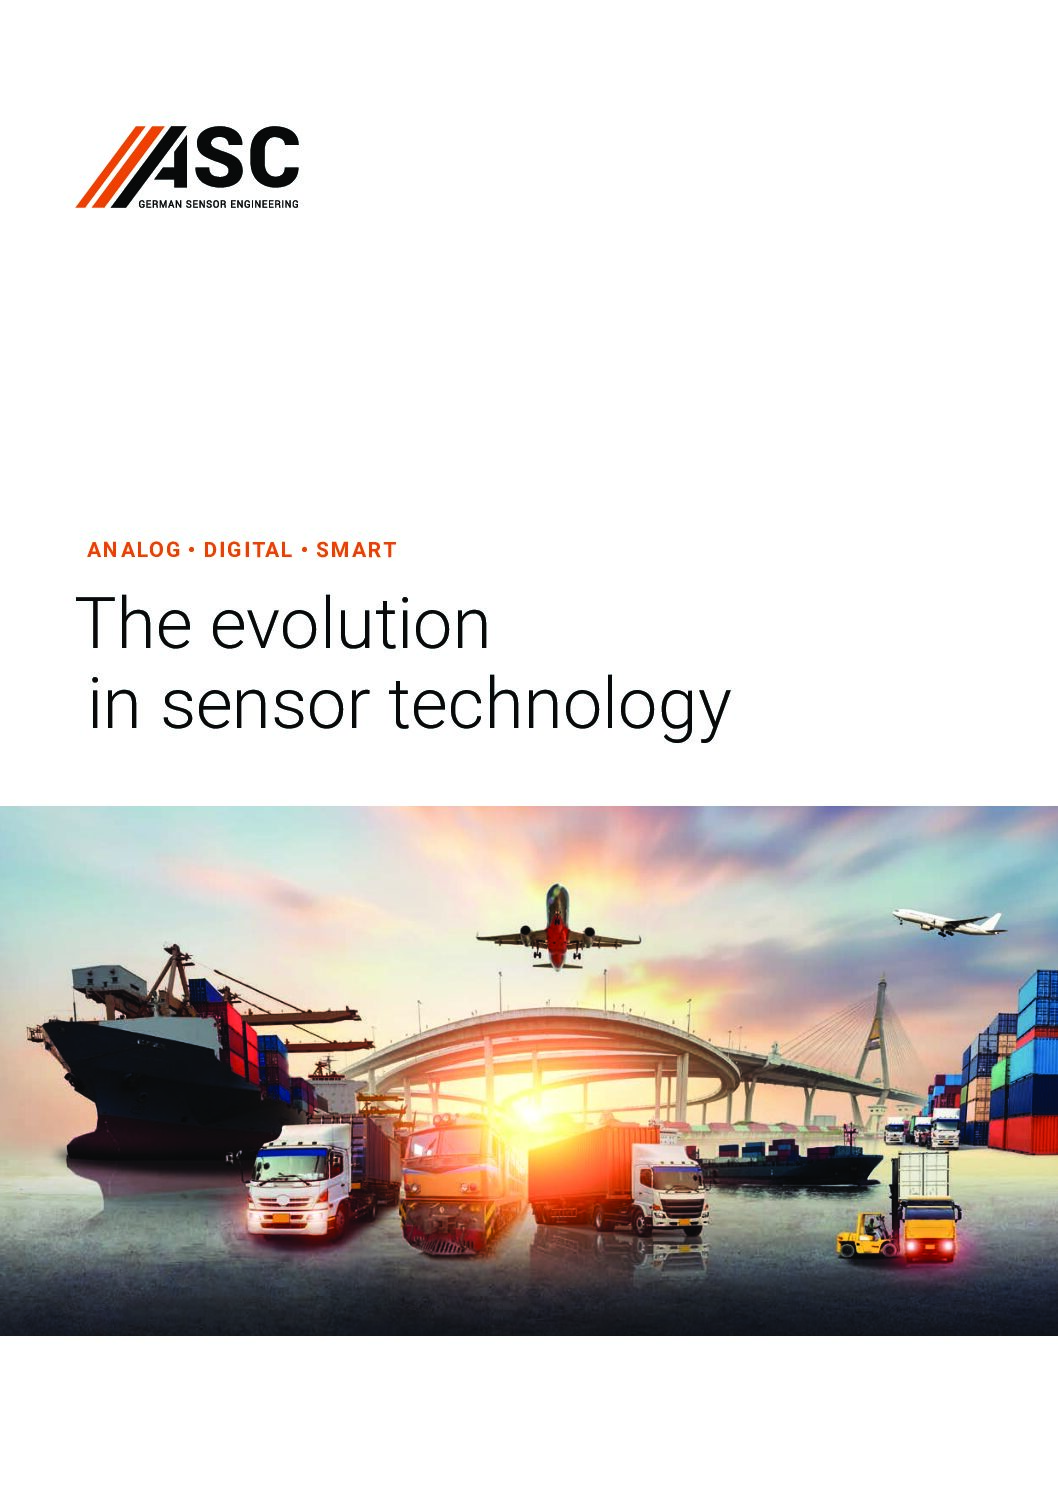 ASC Brochure: The Evolution in Sensor Technology